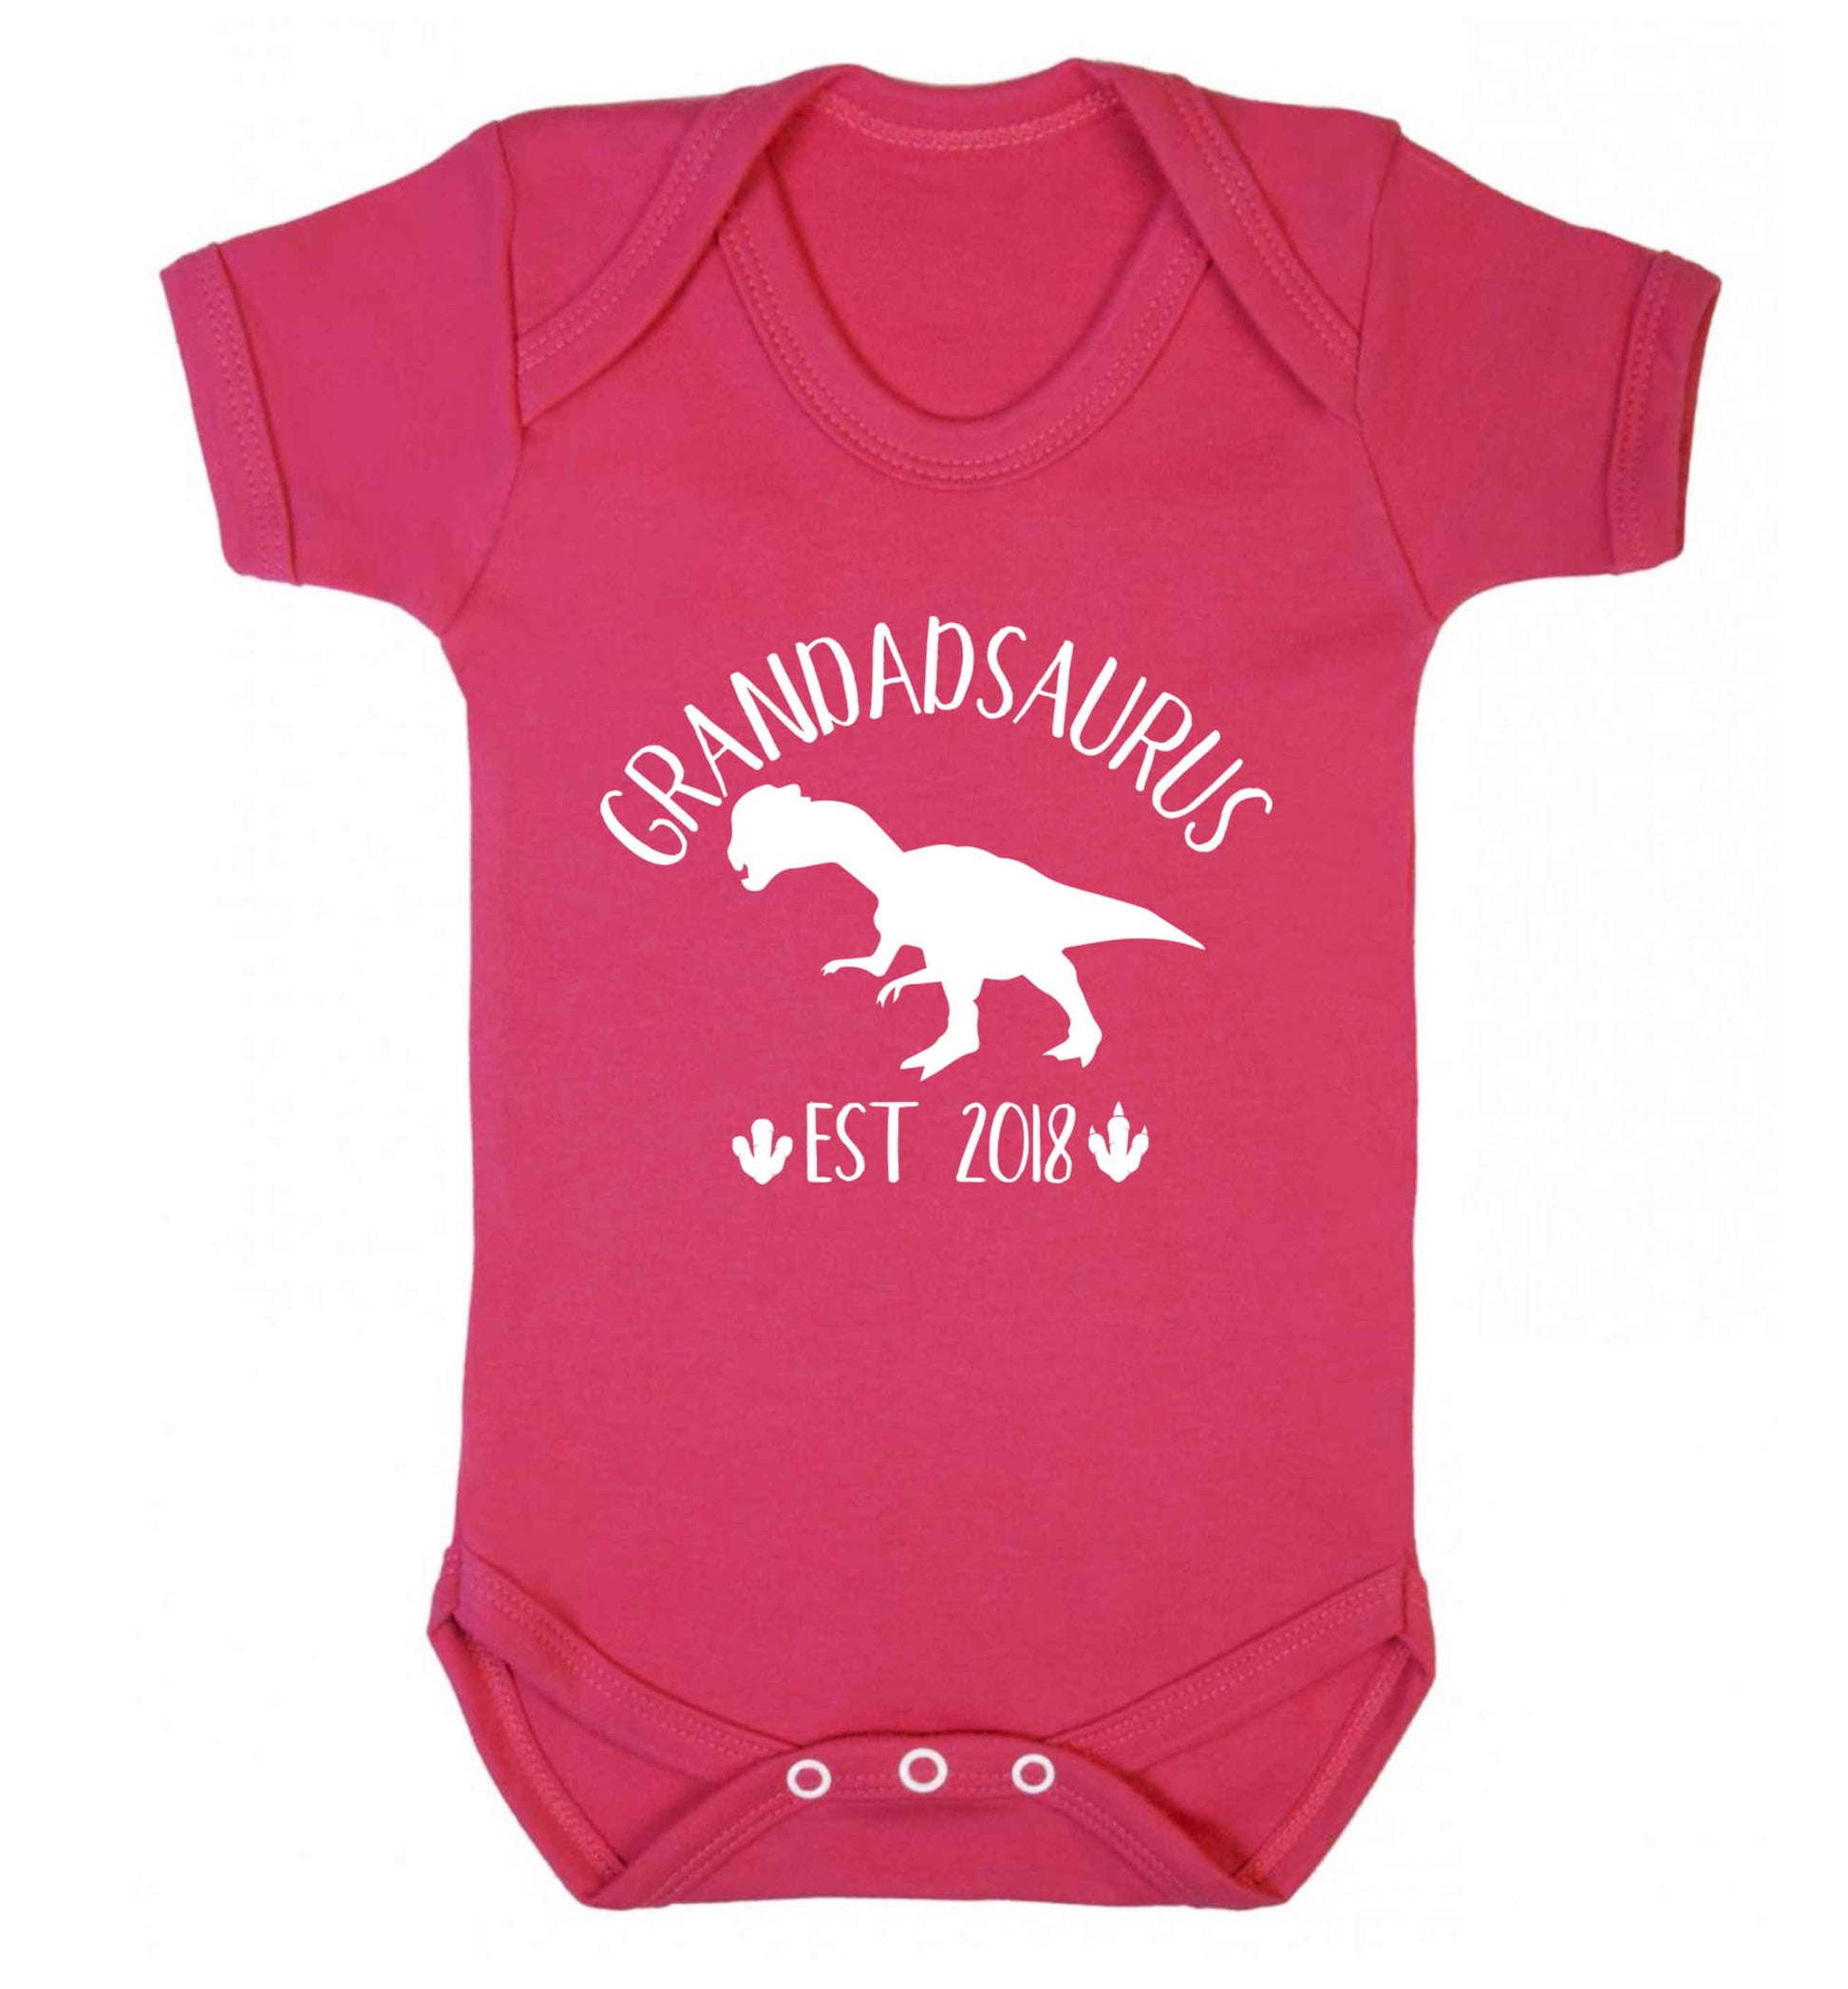 Personalised grandadsaurus since (custom date) Baby Vest dark pink 18-24 months